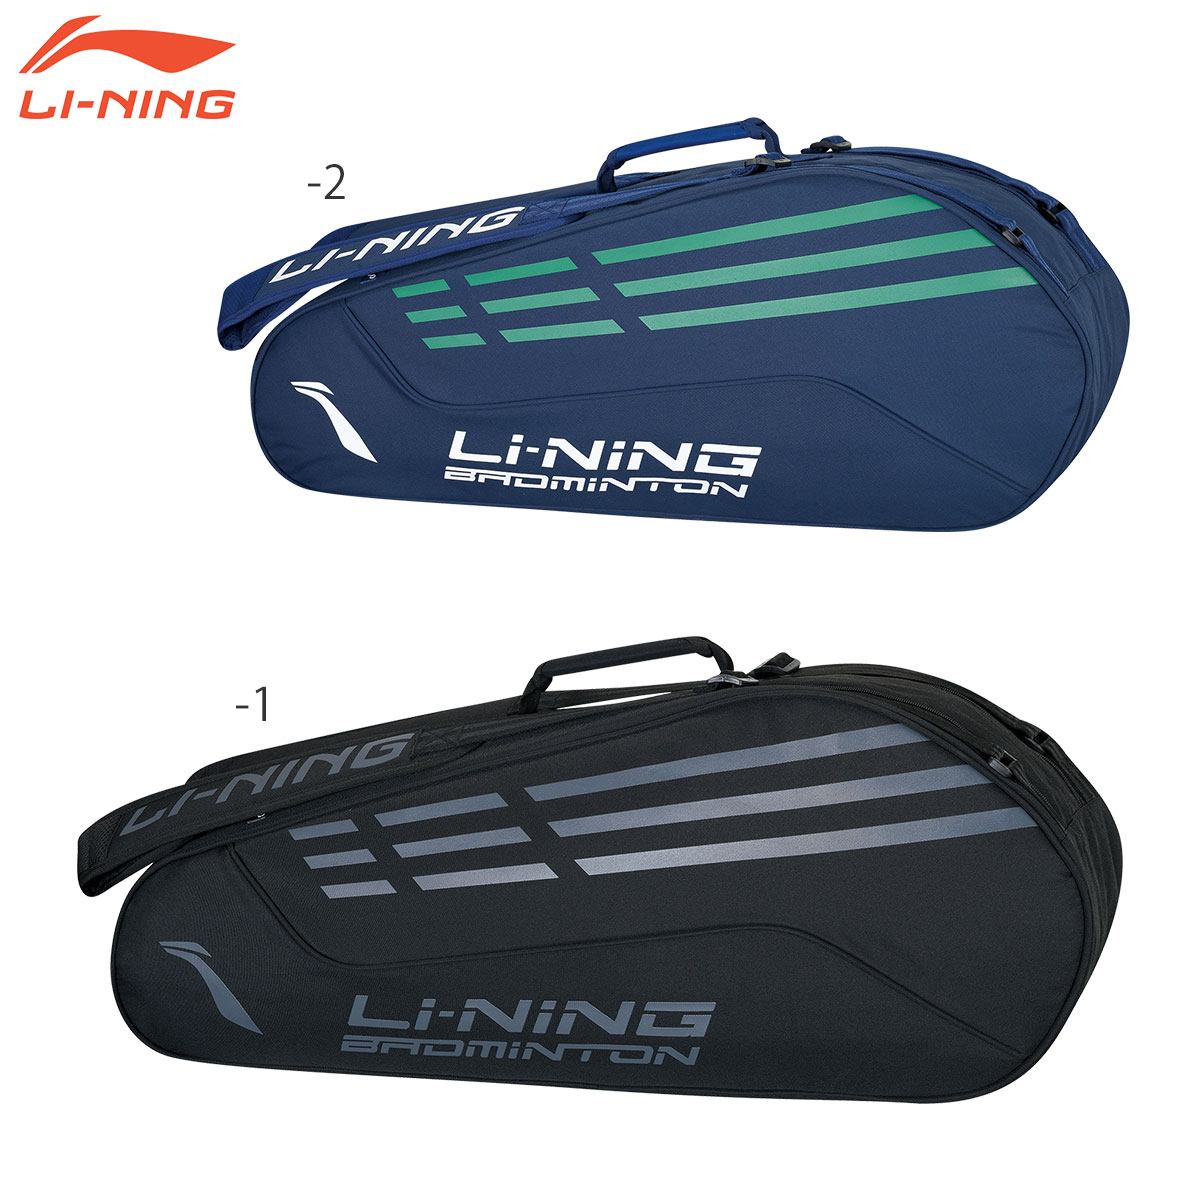 LI-NING ABJN058-2 ラケットバックパック 6(リュックタイプ) バドミントンバッグ リーニン - 2